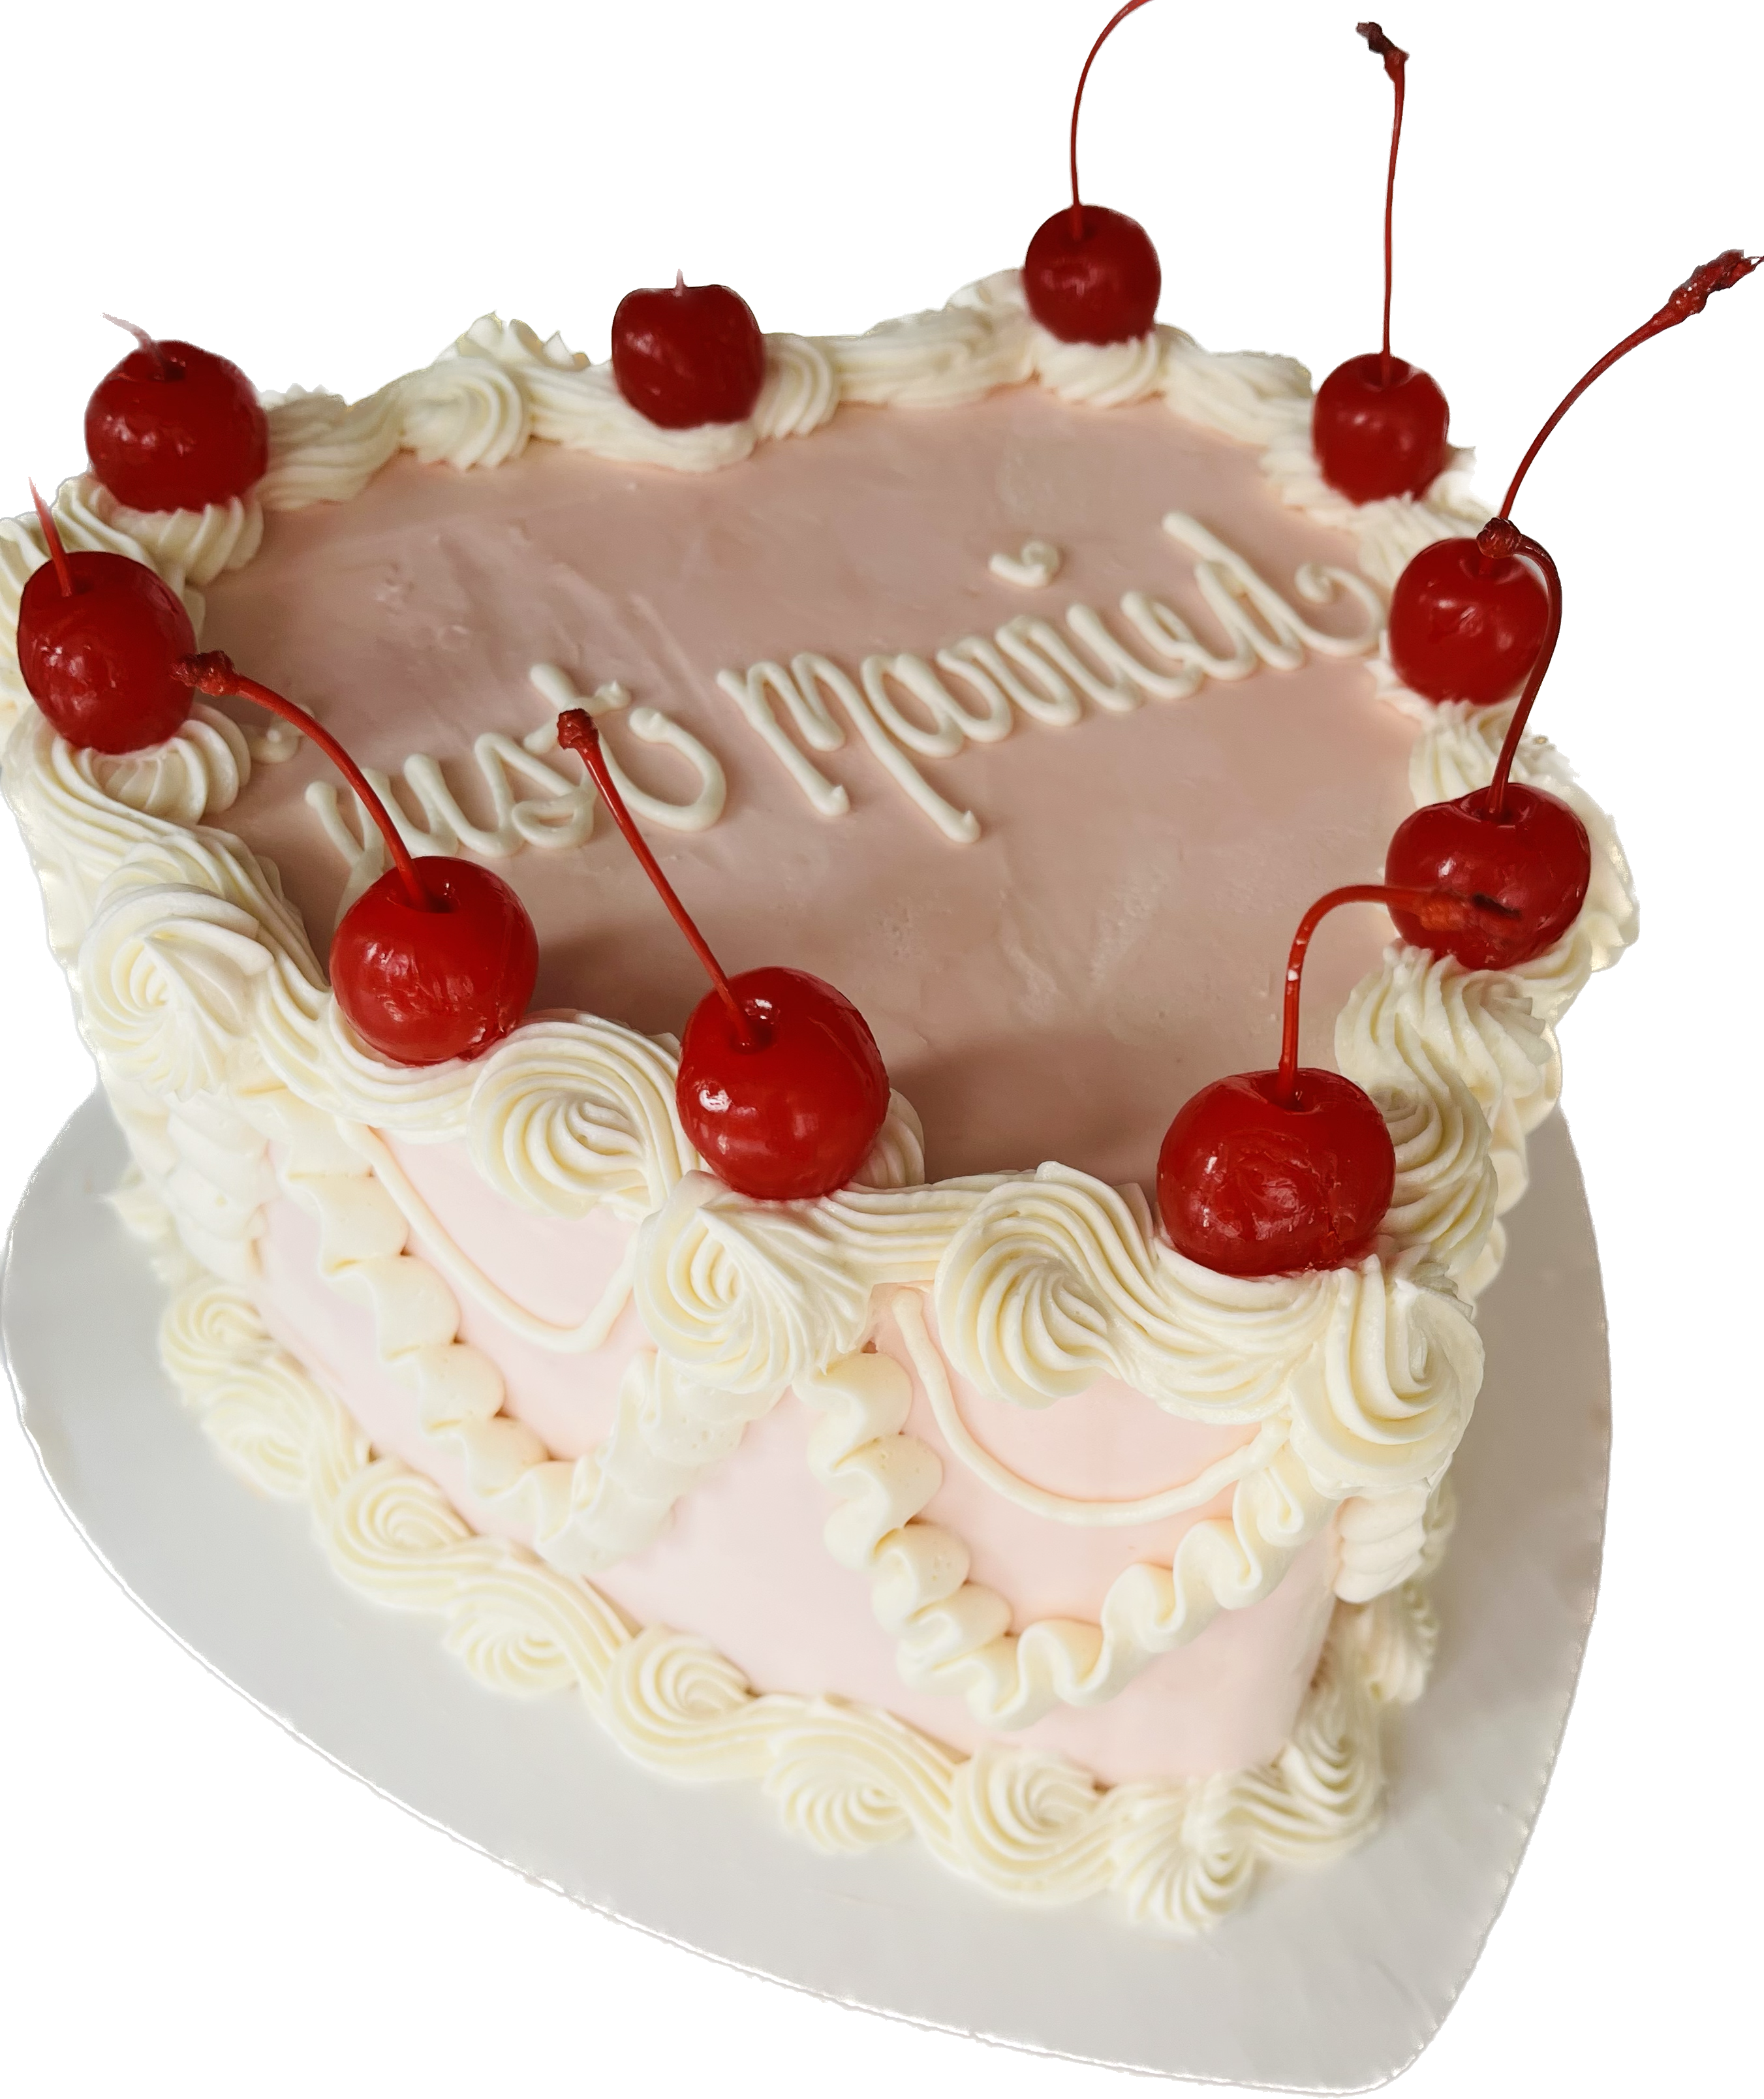 TasteGreatFoodie - Valentine's Day Surprise Cake - Desserts